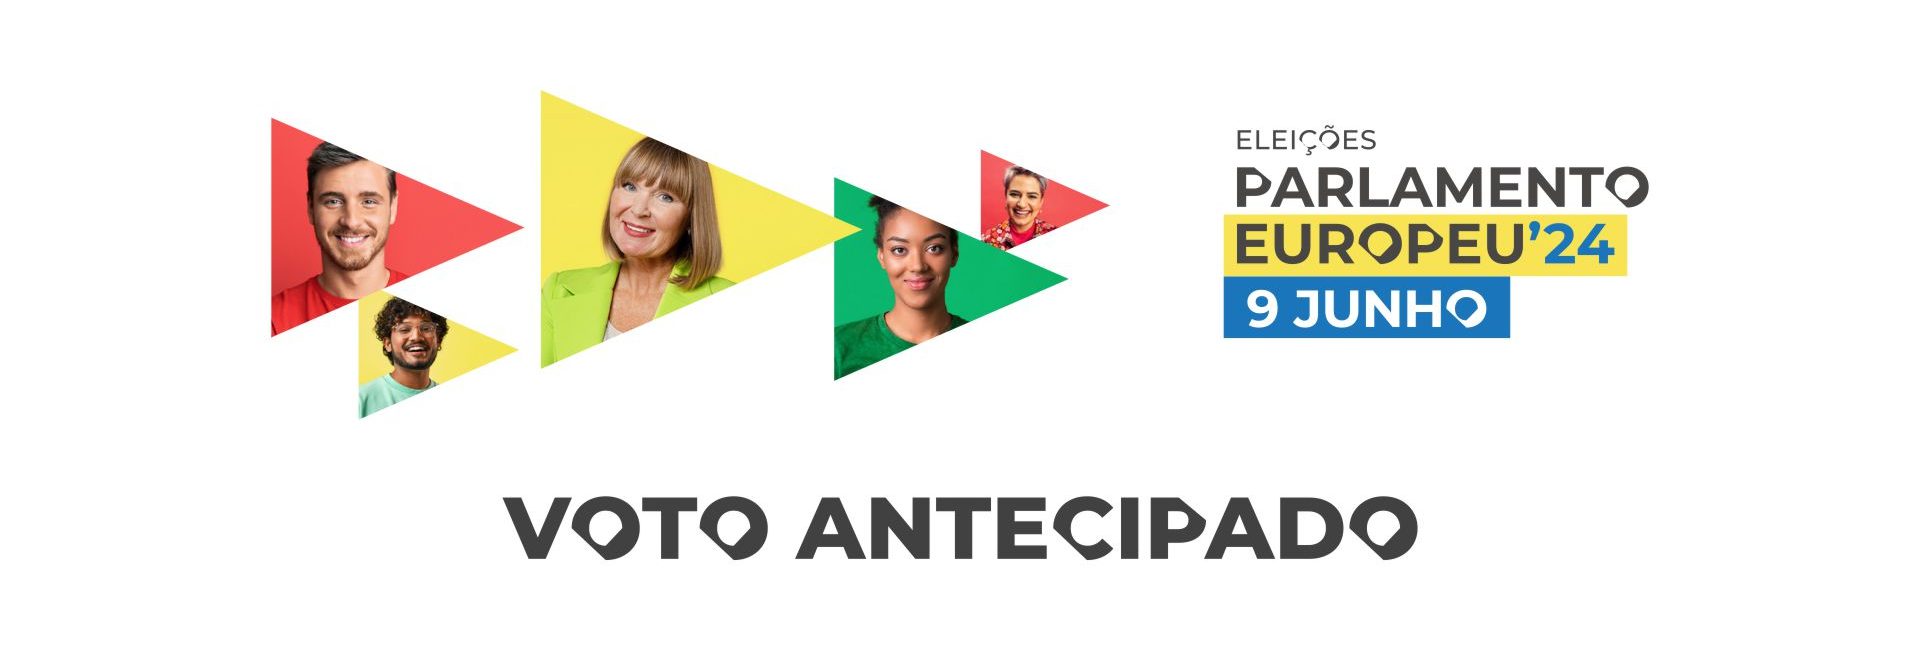 europ24_banner-voto-antecipado